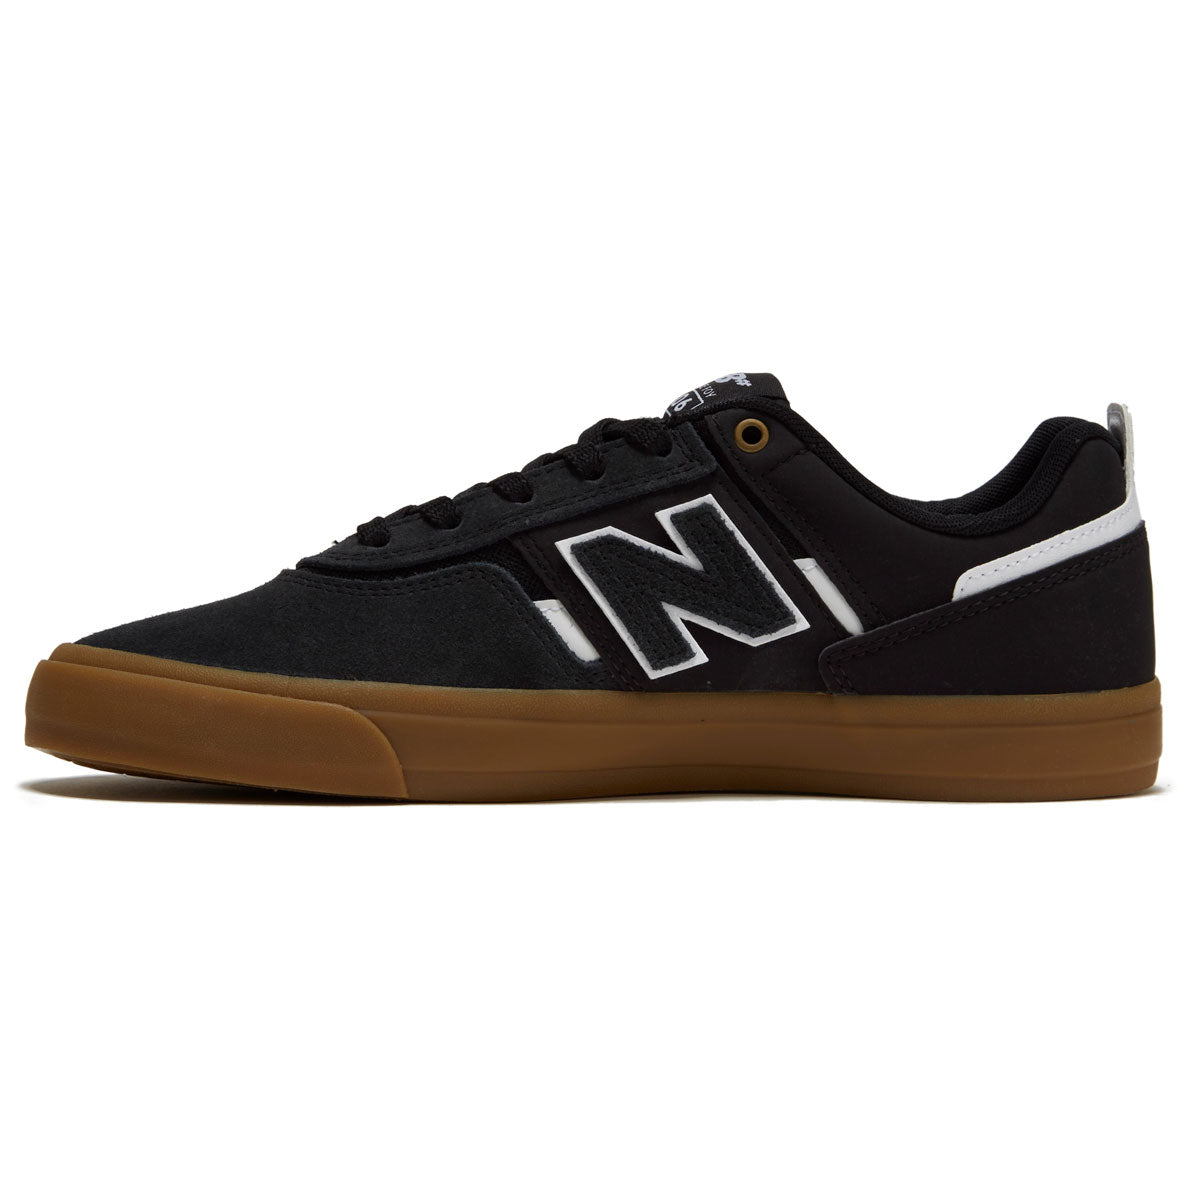 New Balance 306 Foy Shoes - Black/White/Gum image 2